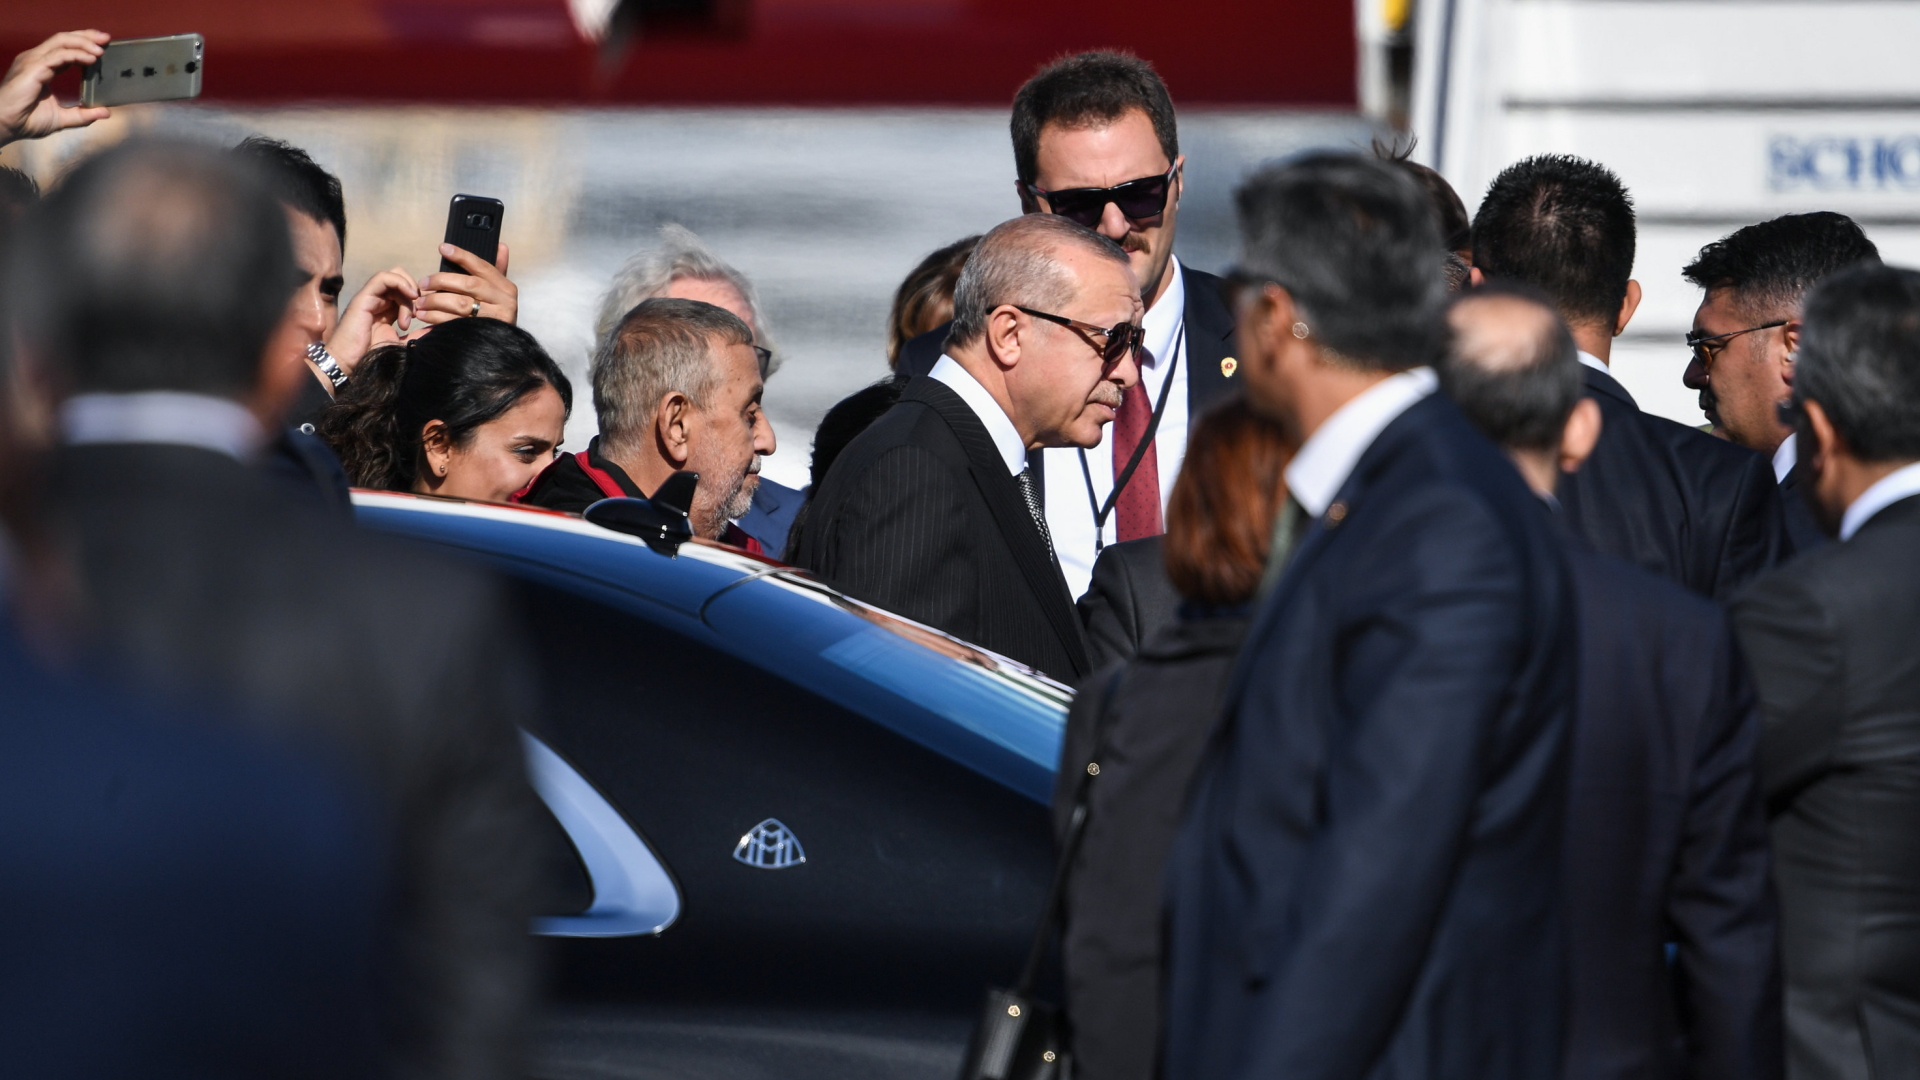 Der türkische Präsident am Flughafen Köln | Bildquelle: dpa